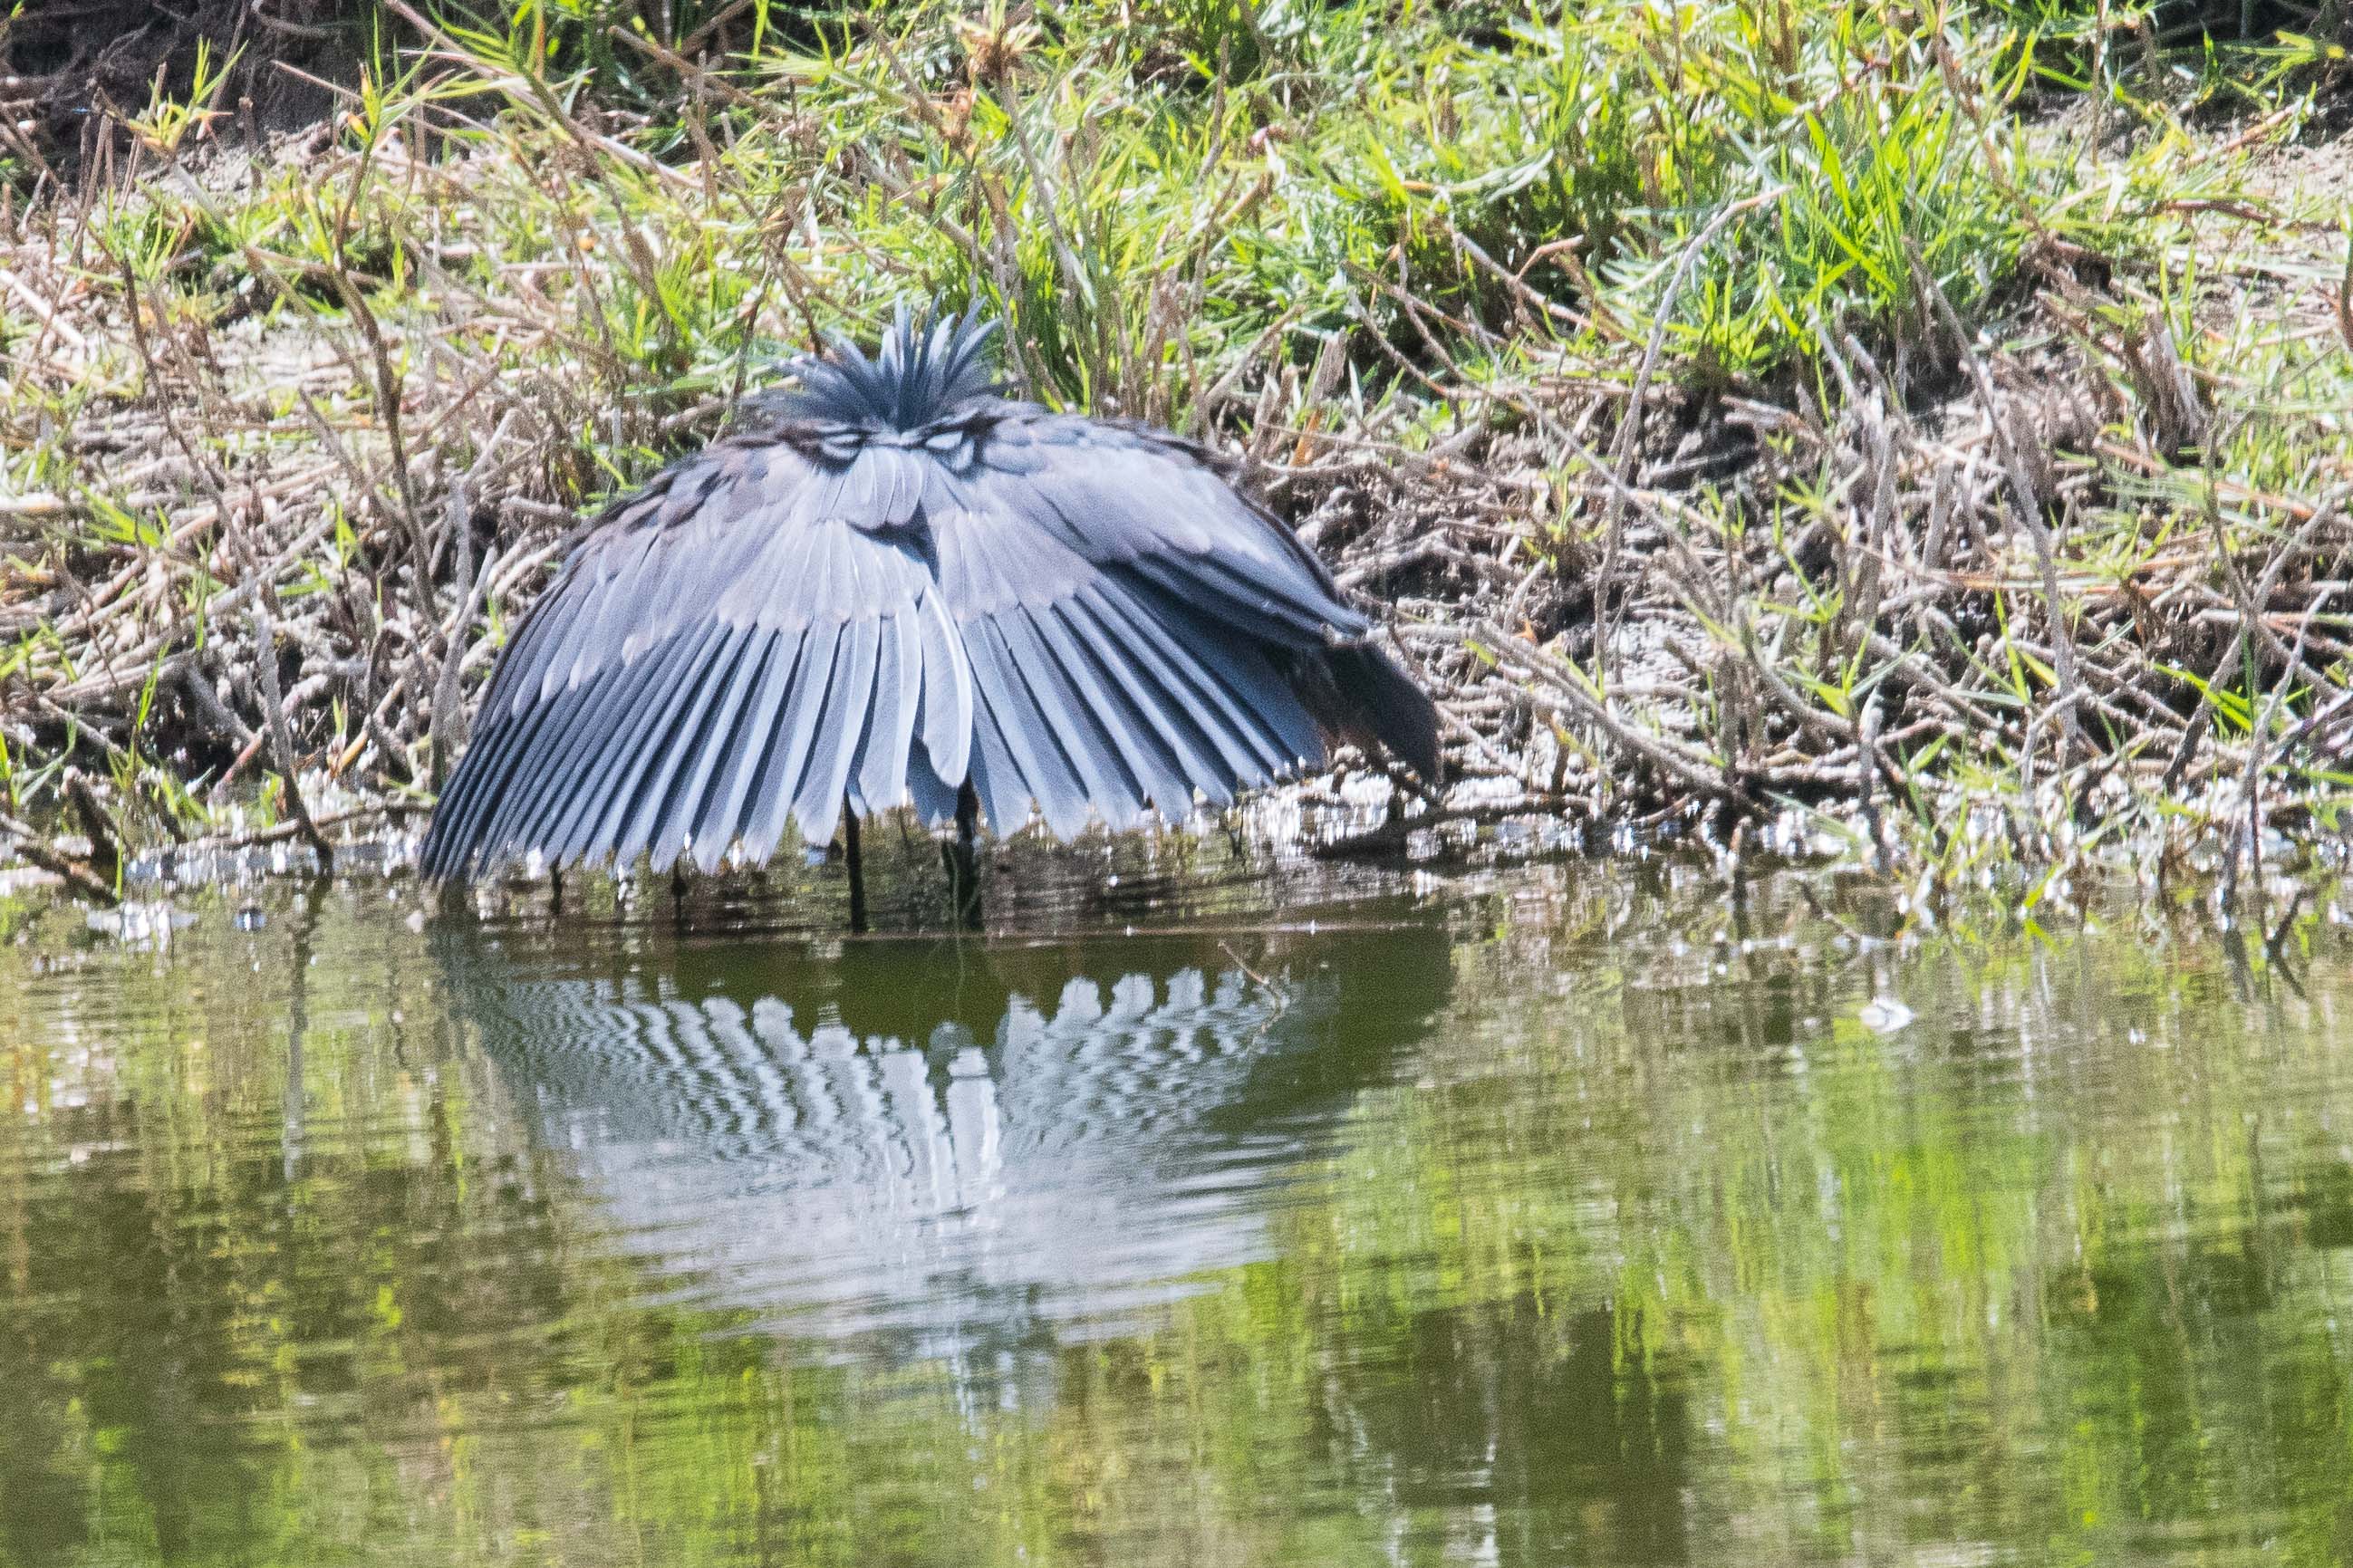 Aigrette ardoisée (Black heron, Egretta ardesiaca), adulte pêchant en attirant les poissons dans l'ombre qu'il crée sous ses ailes, Golf de Saly, Région de Thiès, Sénégal.